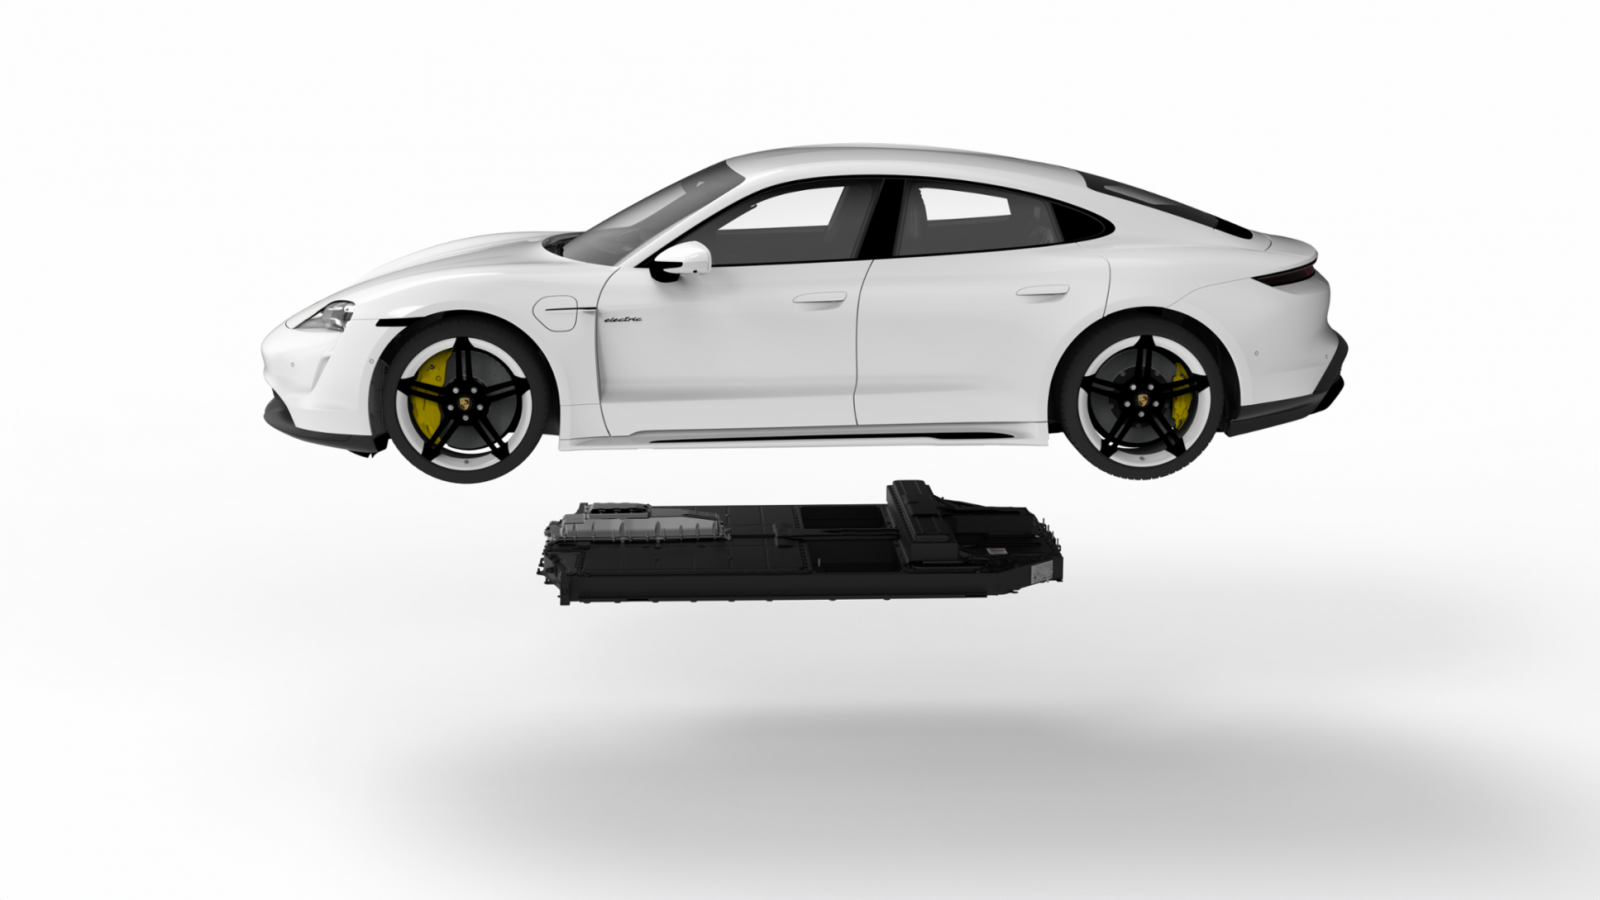 【汽車專知】Porsche電池如何平衡續航里程和性能？2030有機會達到碳中和？